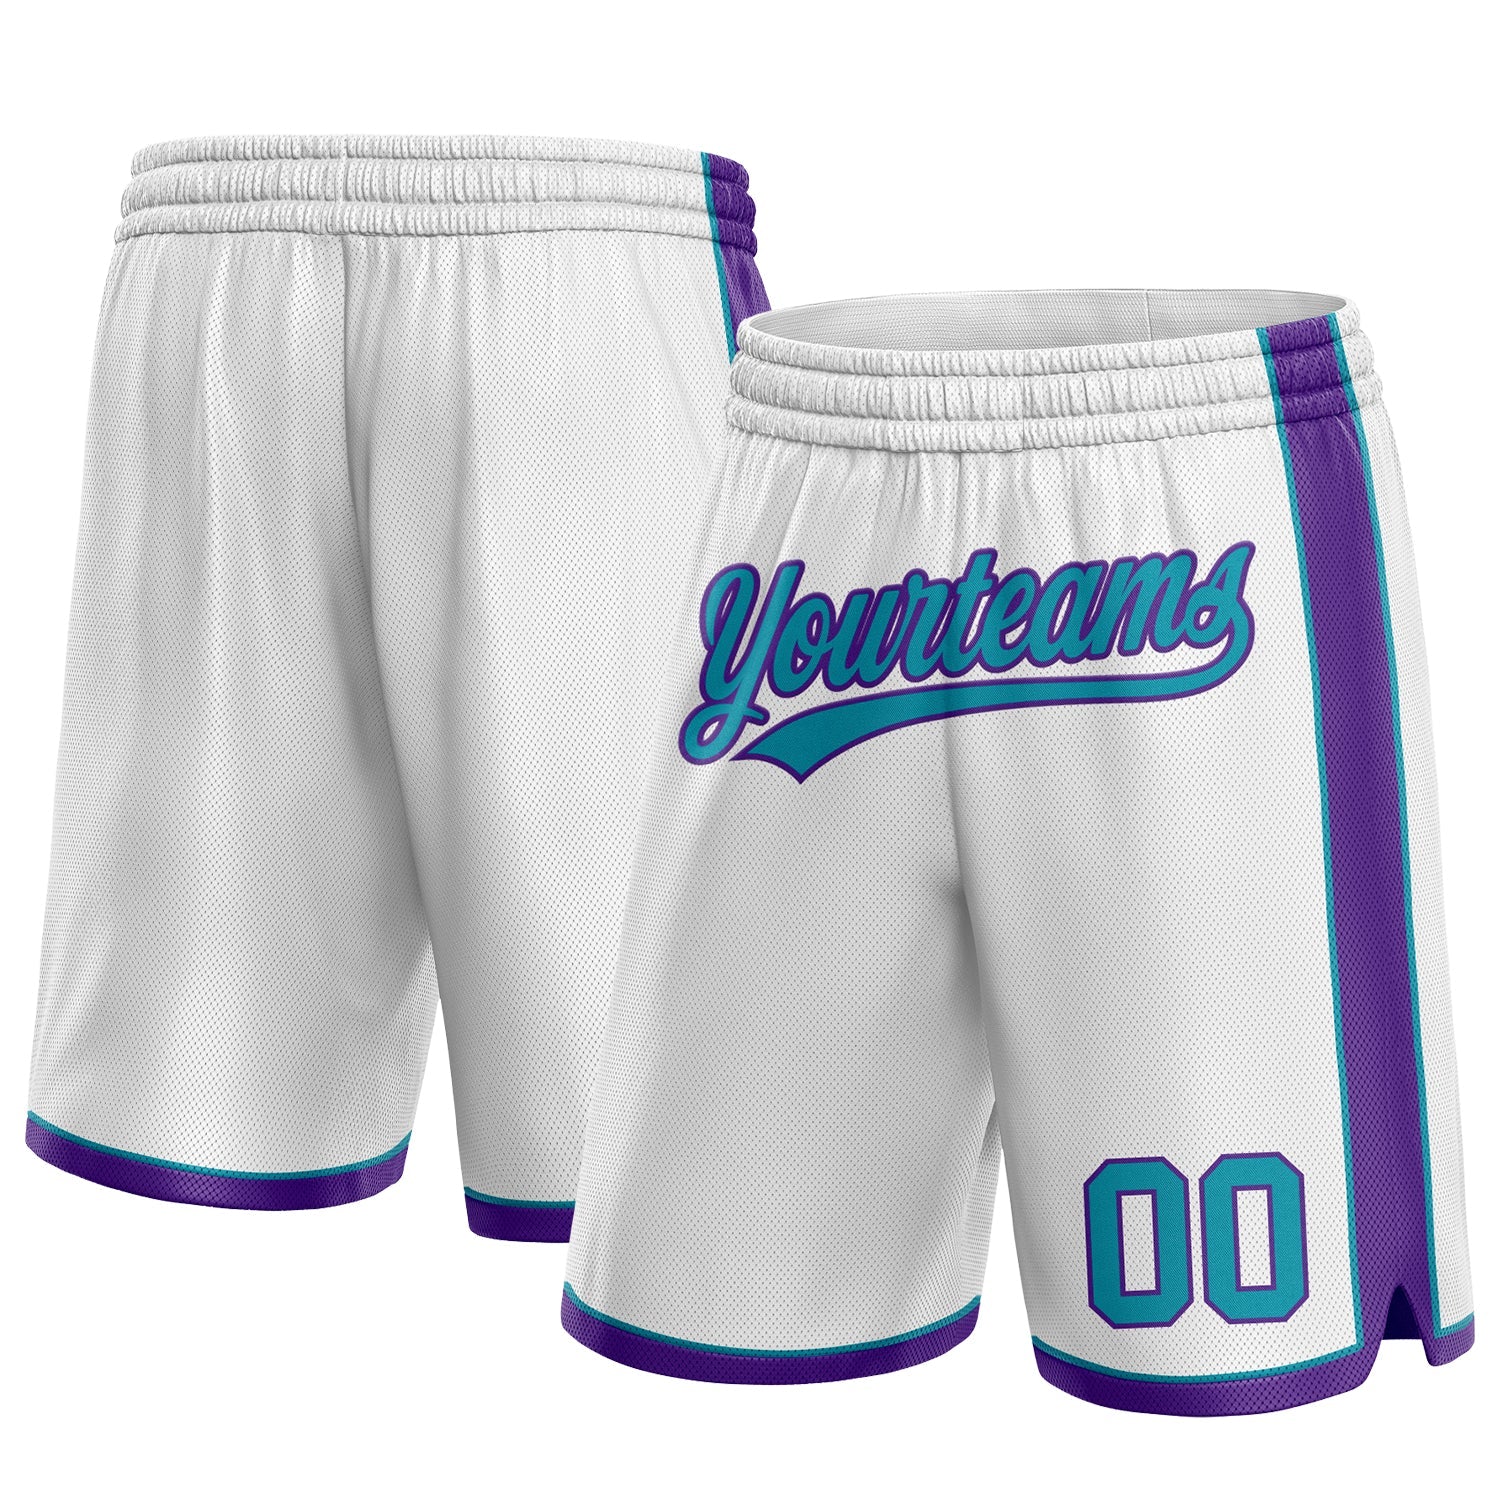 Maßgeschneiderte authentische Basketball-Shorts in Weiß, Blaugrün und Lila